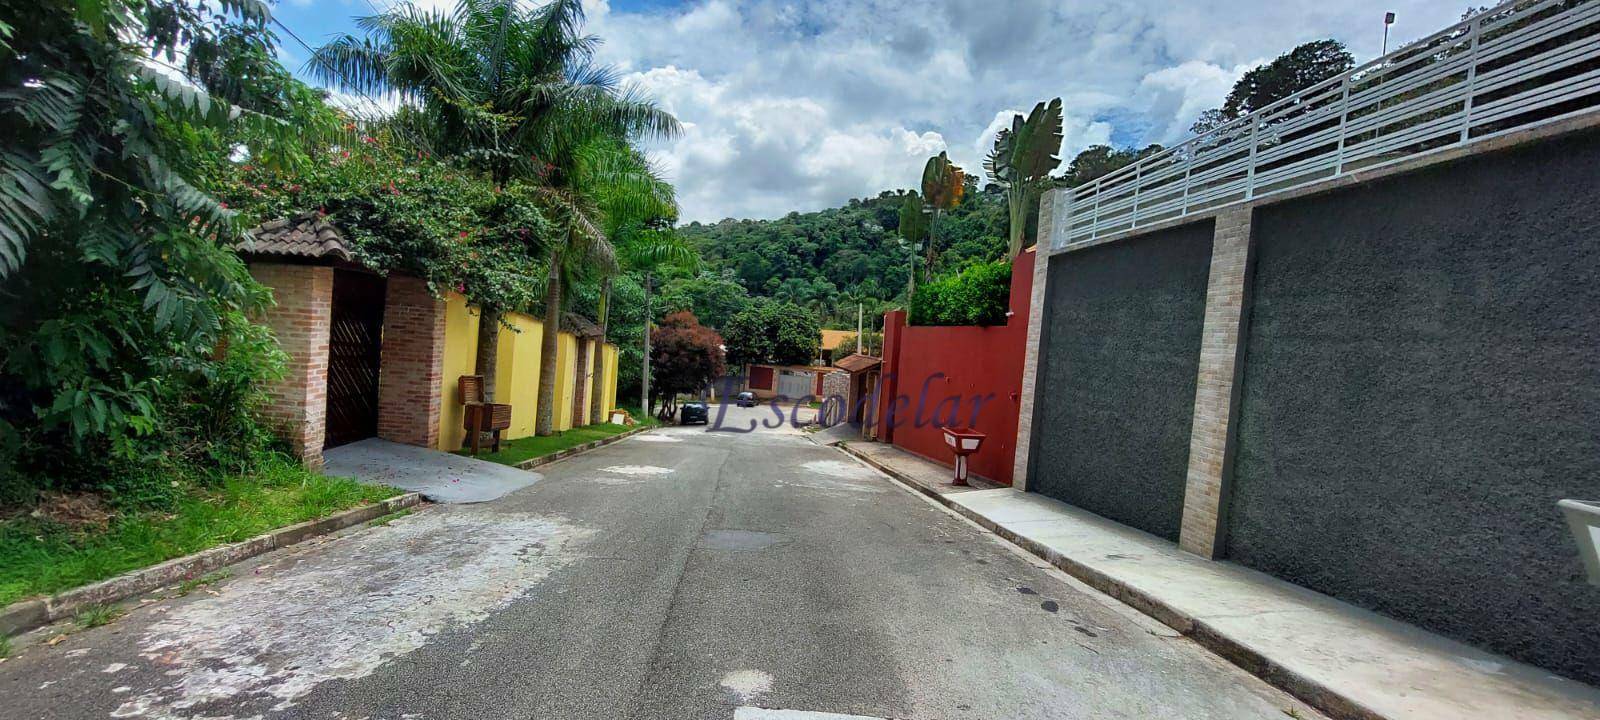 Terreno à venda, 1000 m² por R$ 180.000,00 - Sausalito - Mairiporã/SP